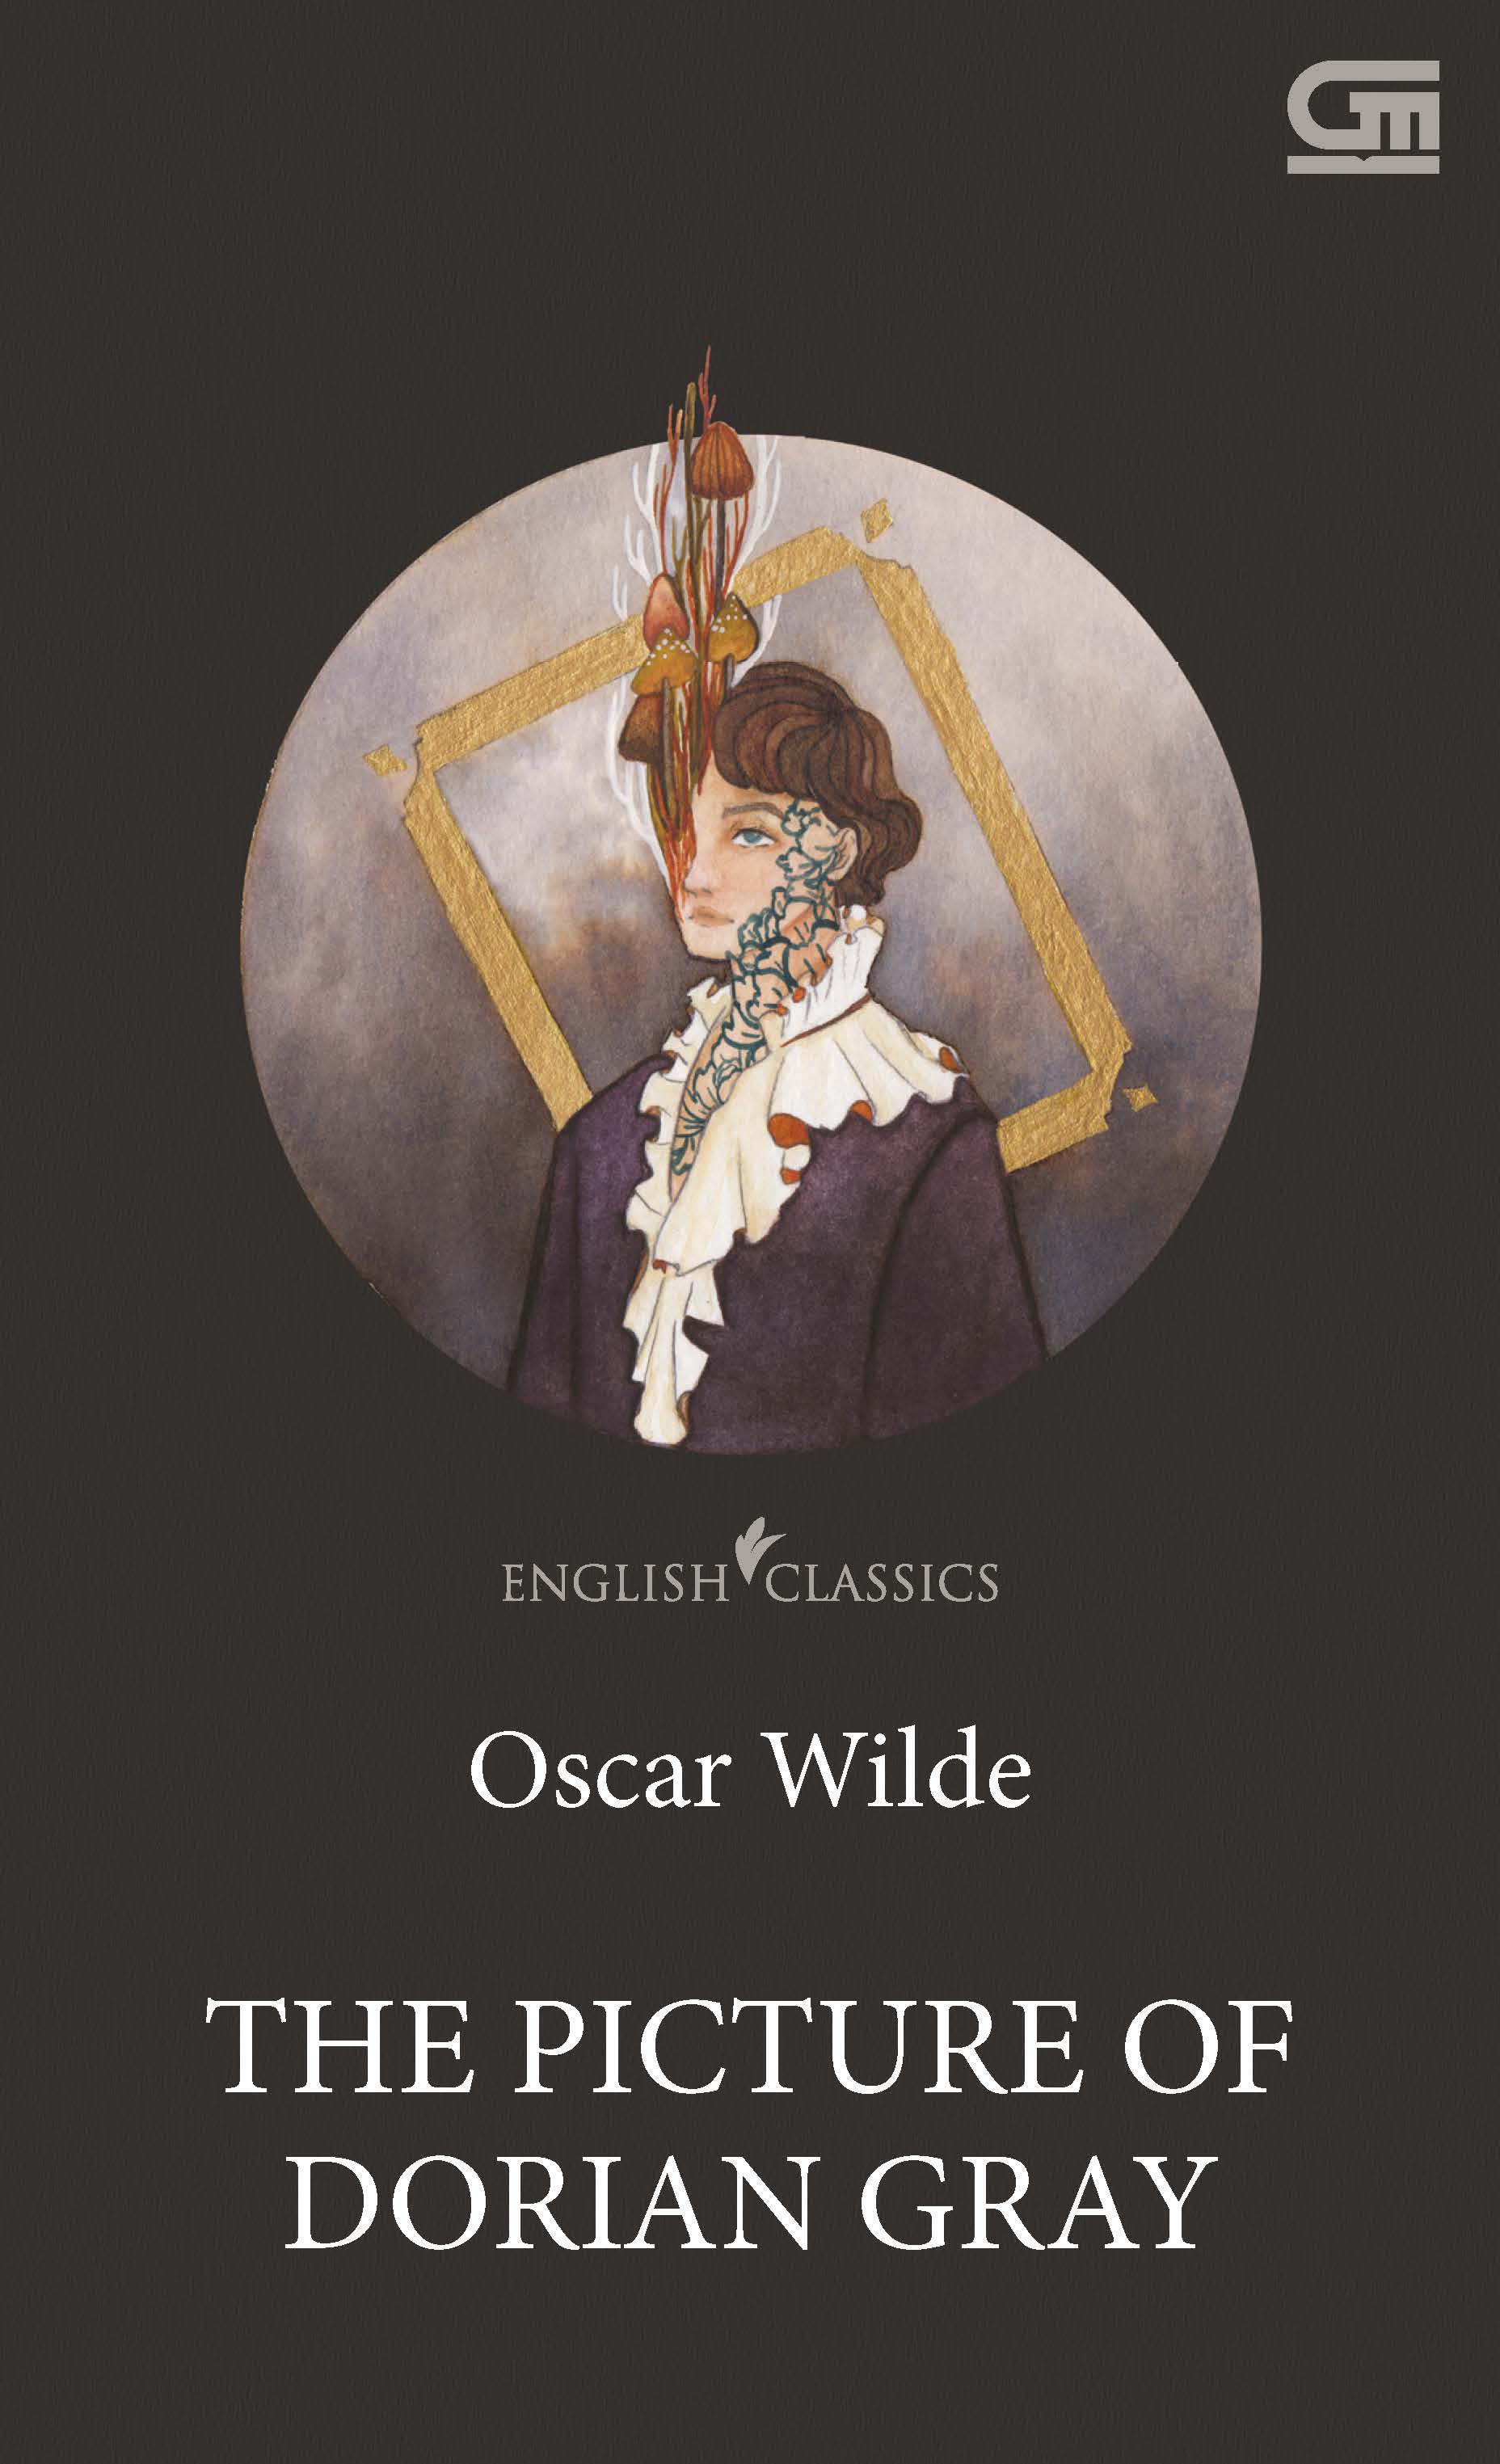 English Classics: The Picture of Dorian Gray